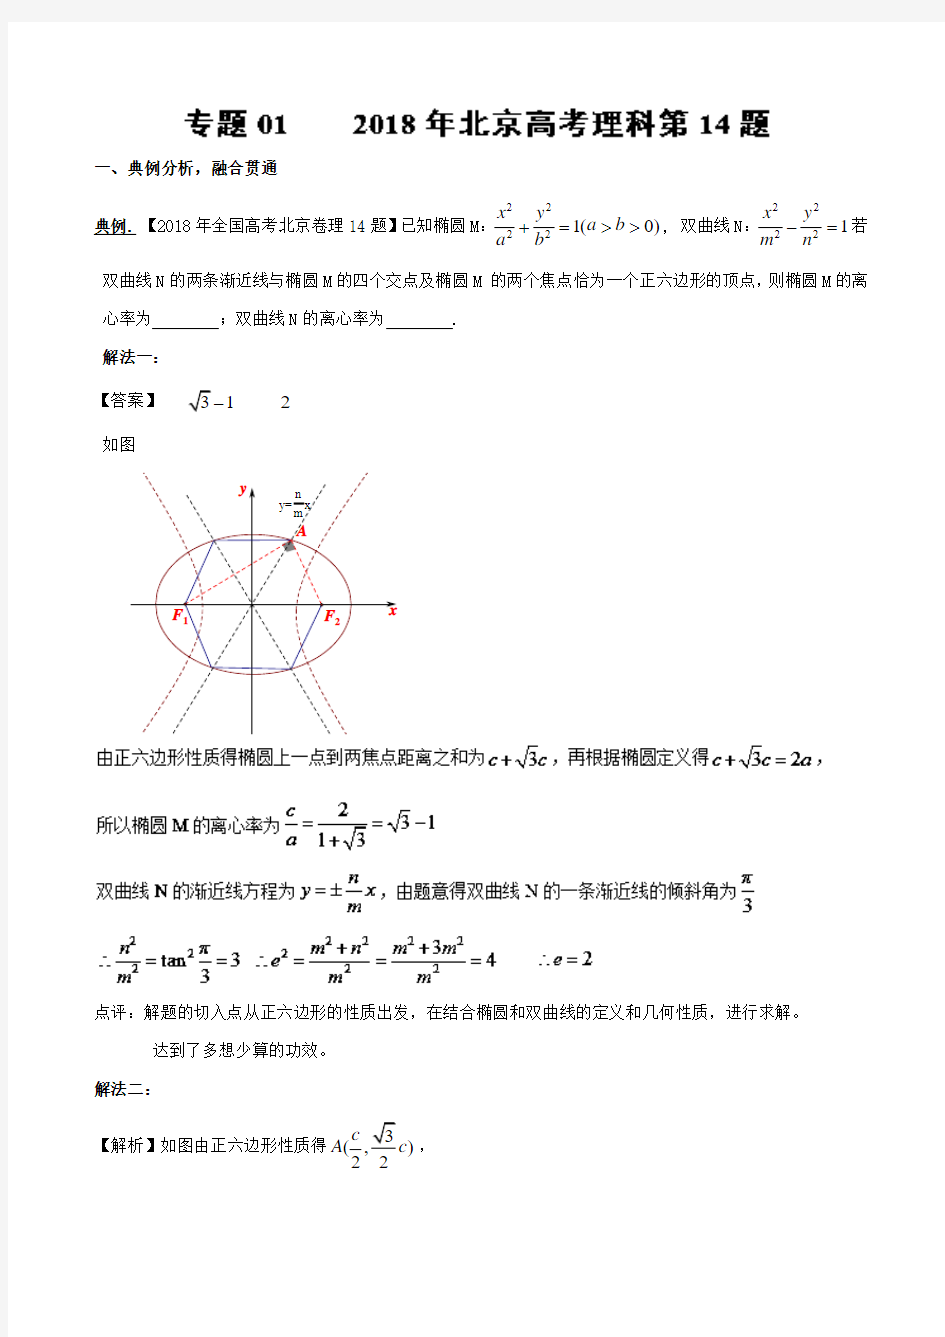 2018高考真题数学小题大做专题6.12018年北京高考理科第14题